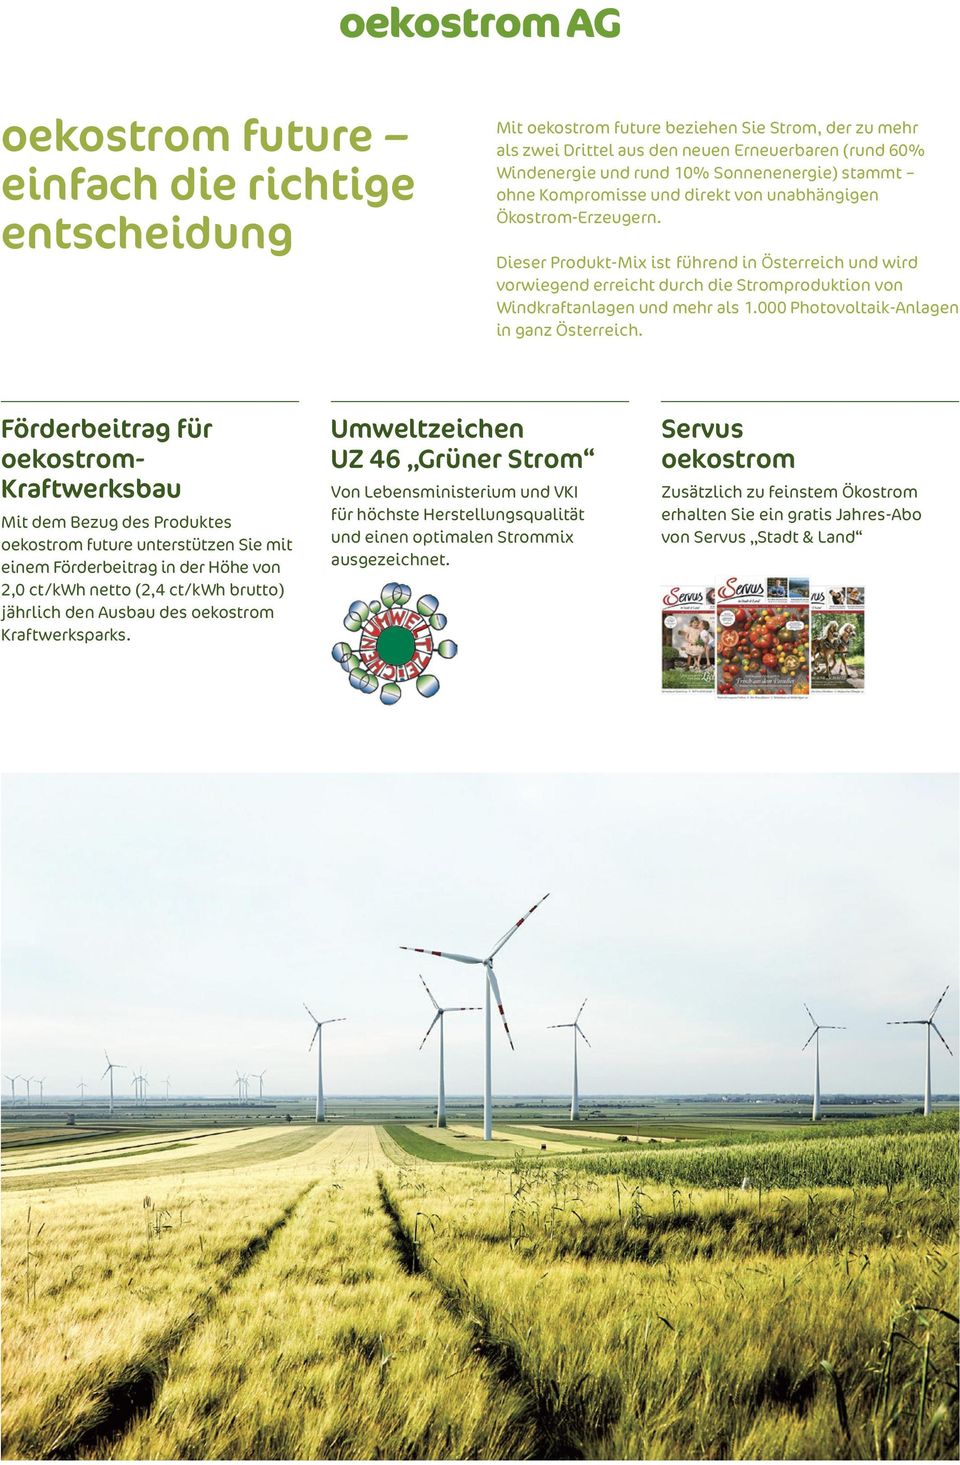 Dieser Produkt-Mix ist führend in Österreich und wird vorwiegend erreicht durch die Stromproduktion von Windkraftanlagen und mehr als 1.000 Photovoltaik-Anlagen in ganz Österreich.